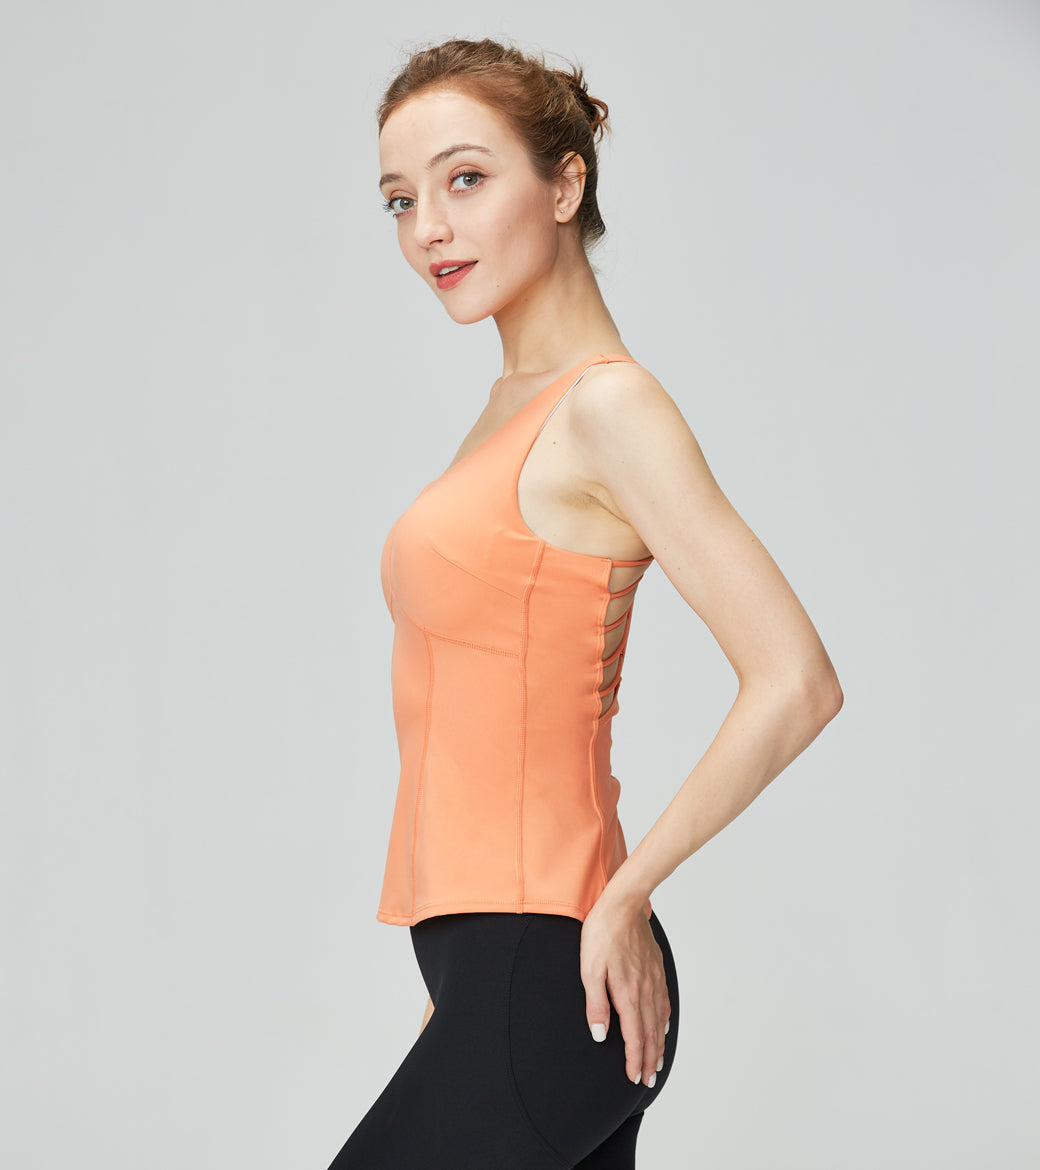 LOVSOFT Women's Orange Long Sports Yoga Bra Gym Running Exercise Vest